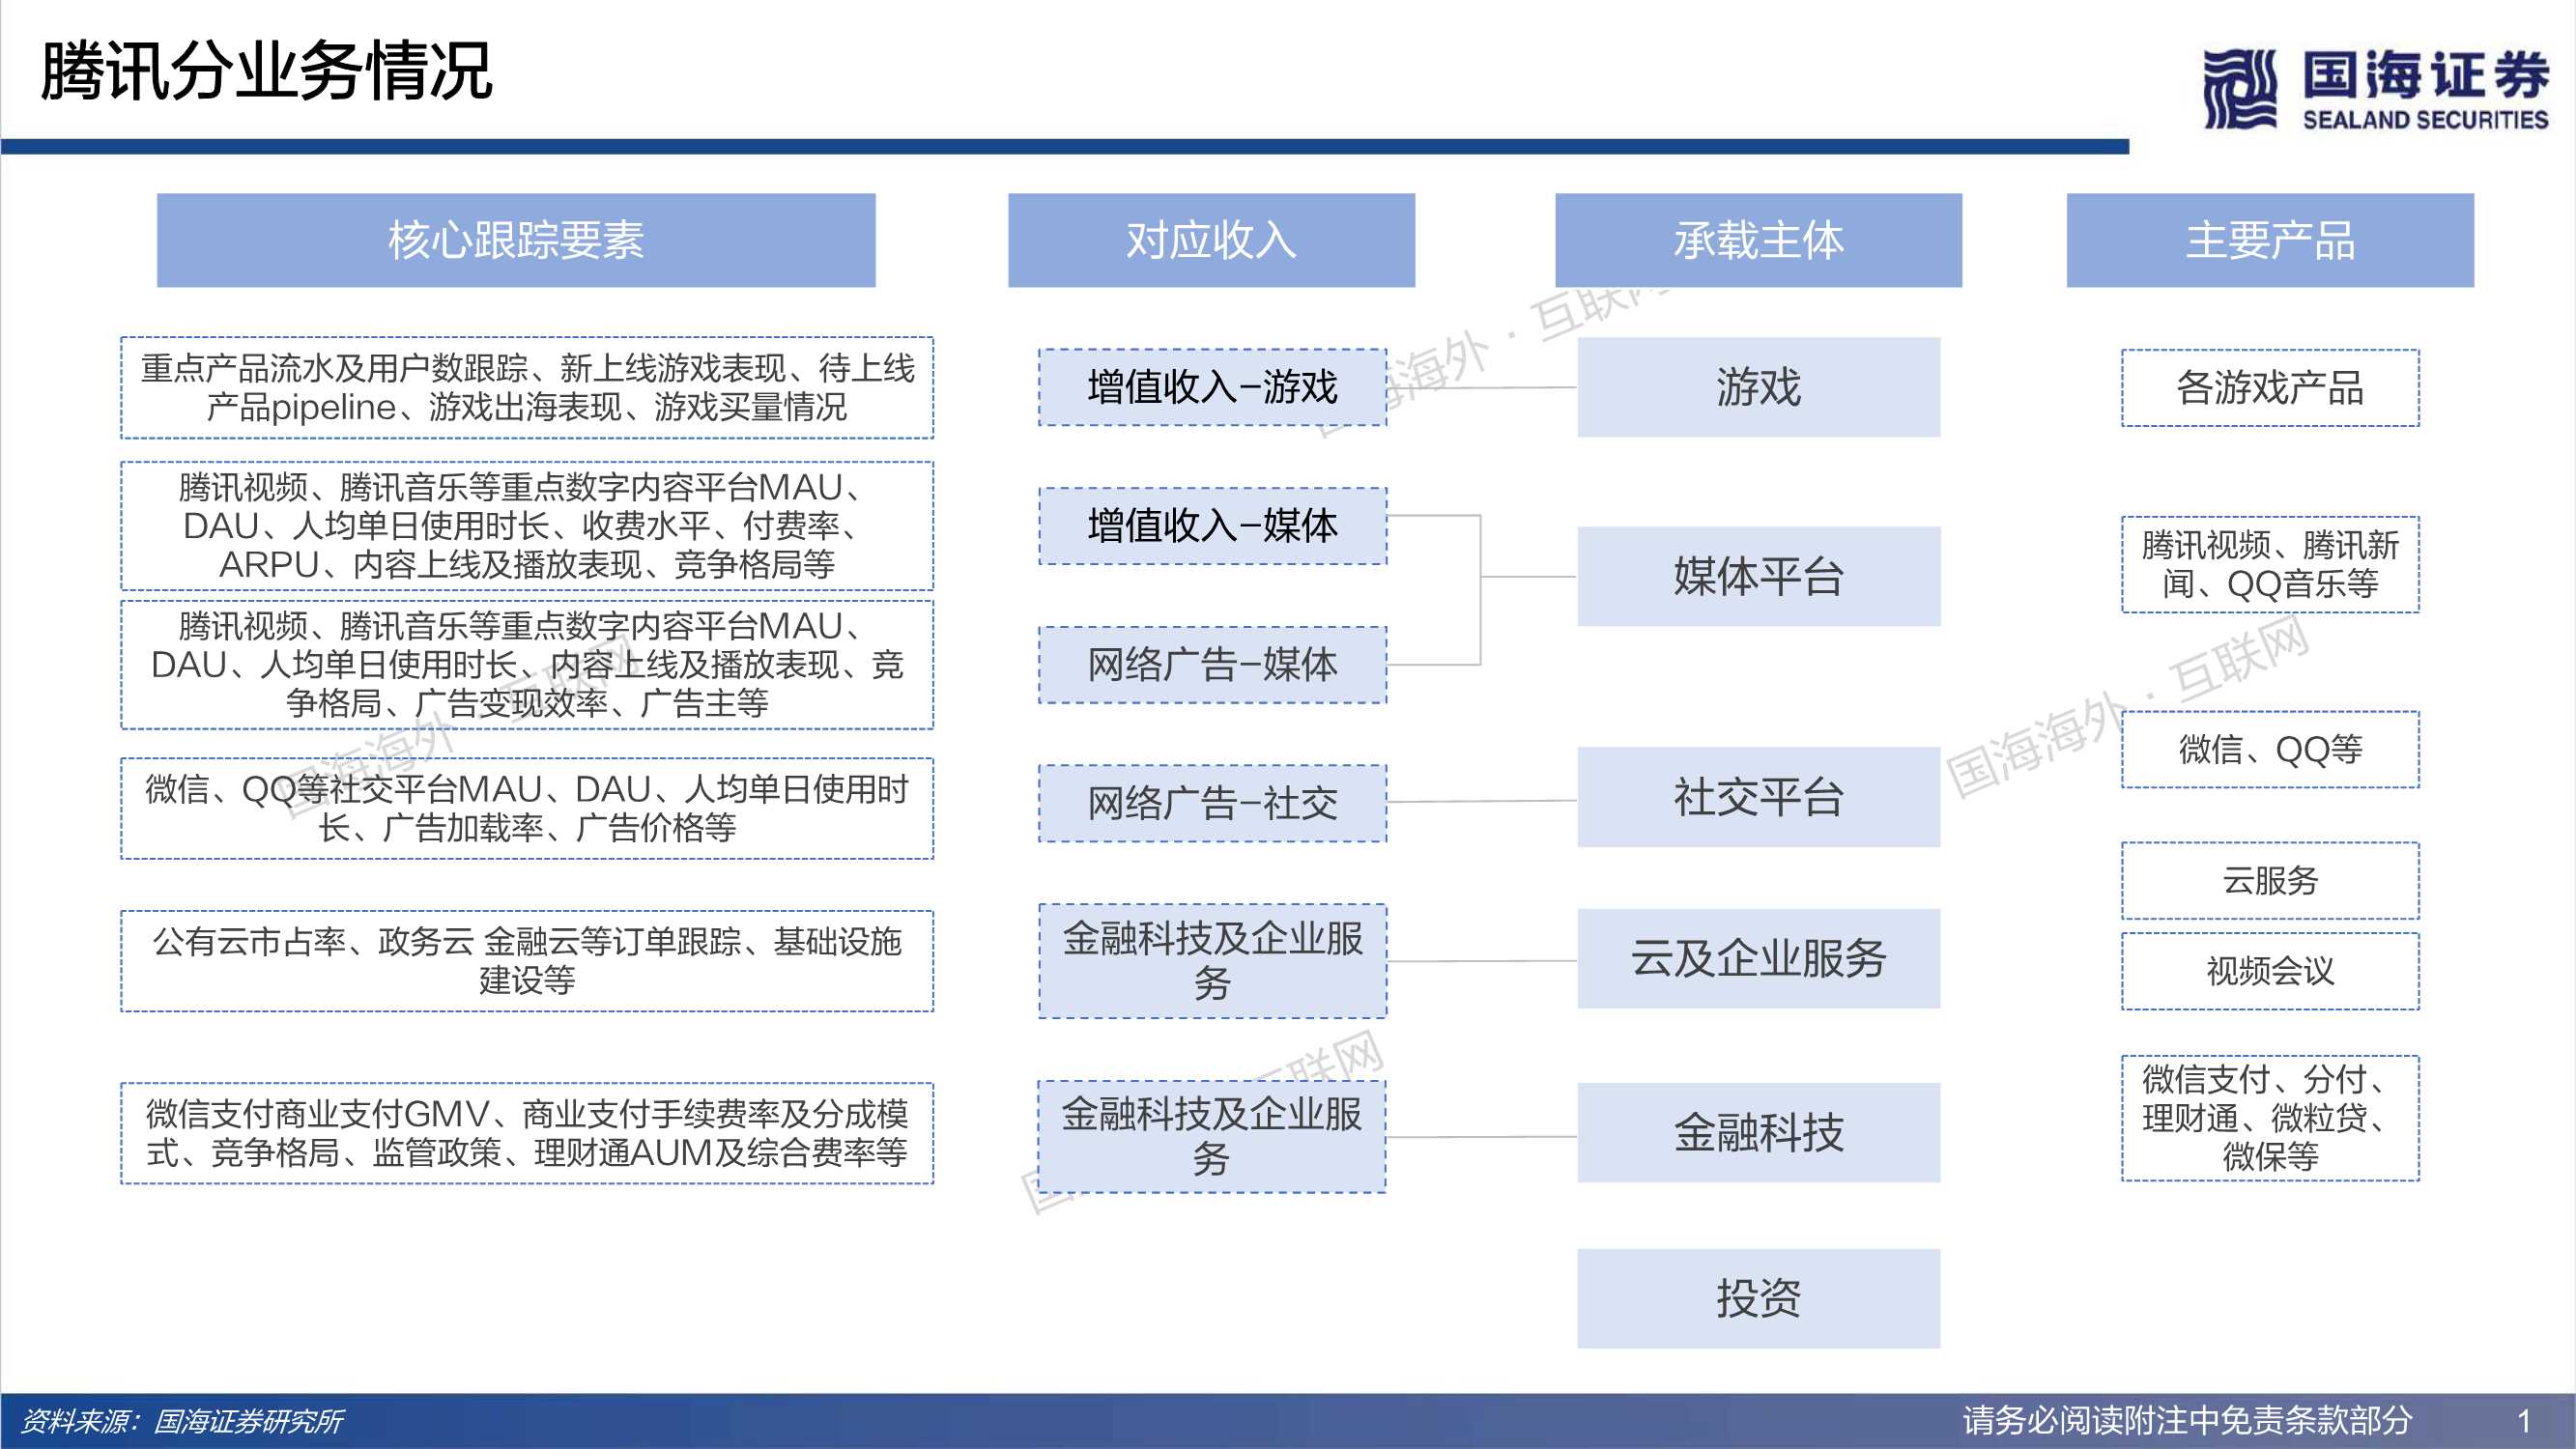 国海证券-腾讯控股-0700.HK-双周篇：高频数据跟踪系列-20220112-42页